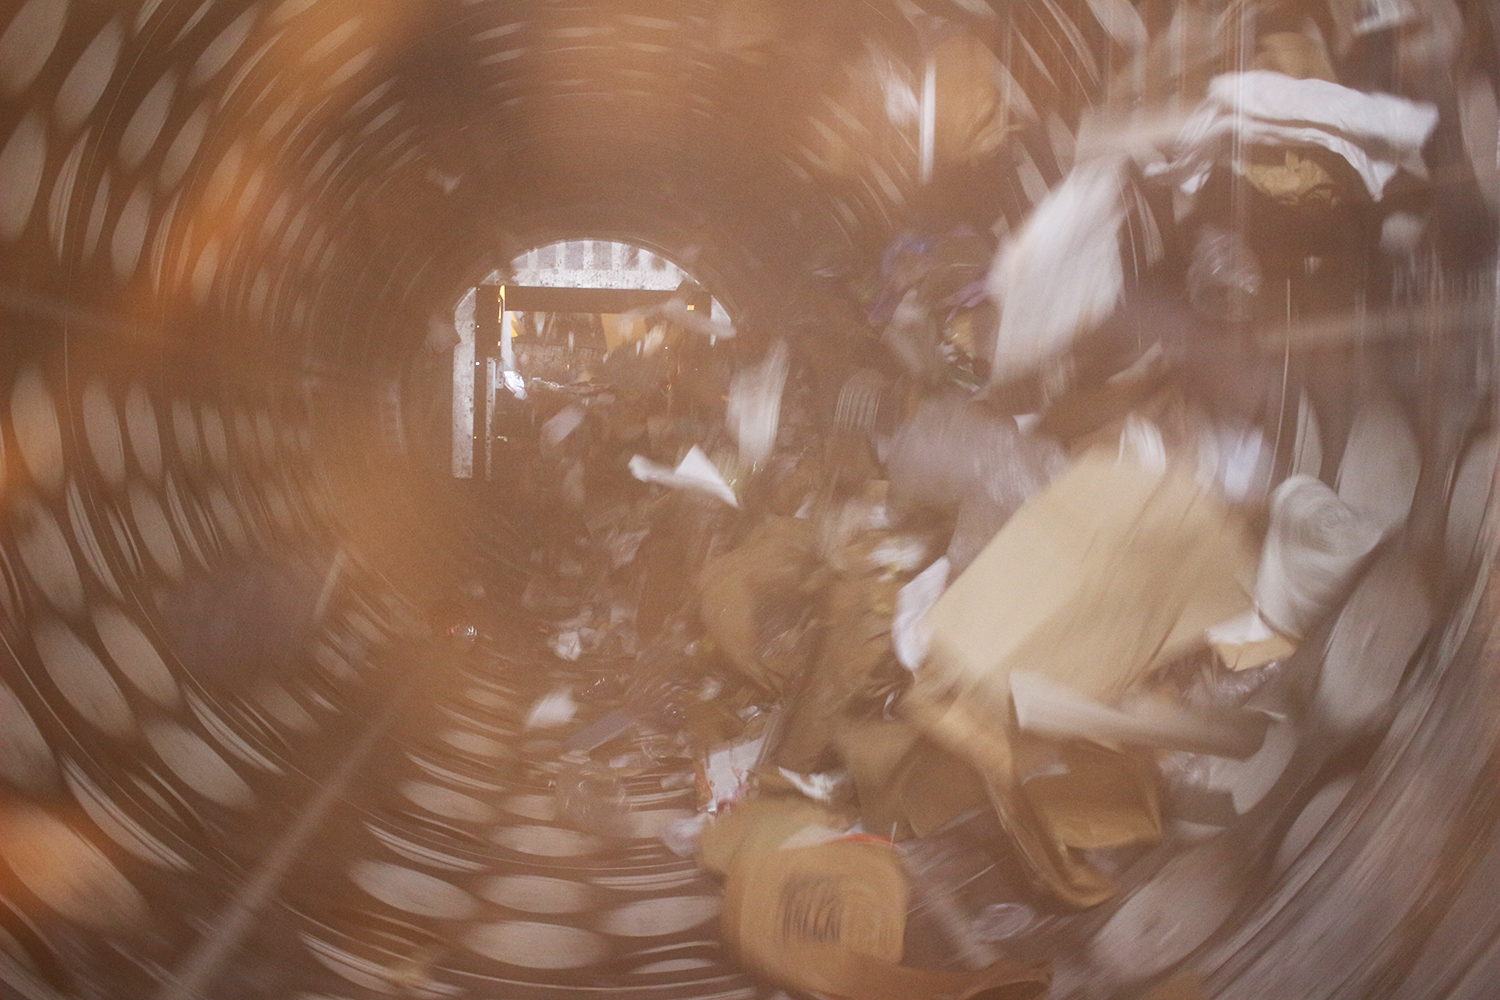 Une fois le contenu déversé dans les locaux de l’usine, les déchets de la poubelle jaune sont acheminés via la trémie d’alimentation qui pousse les déchets jusqu’au trommel. Cette machine permet un tri mécanique des déchets par taille et de récupérer les « matières fines », y compris en acier et en aluminium © Globe Reporters